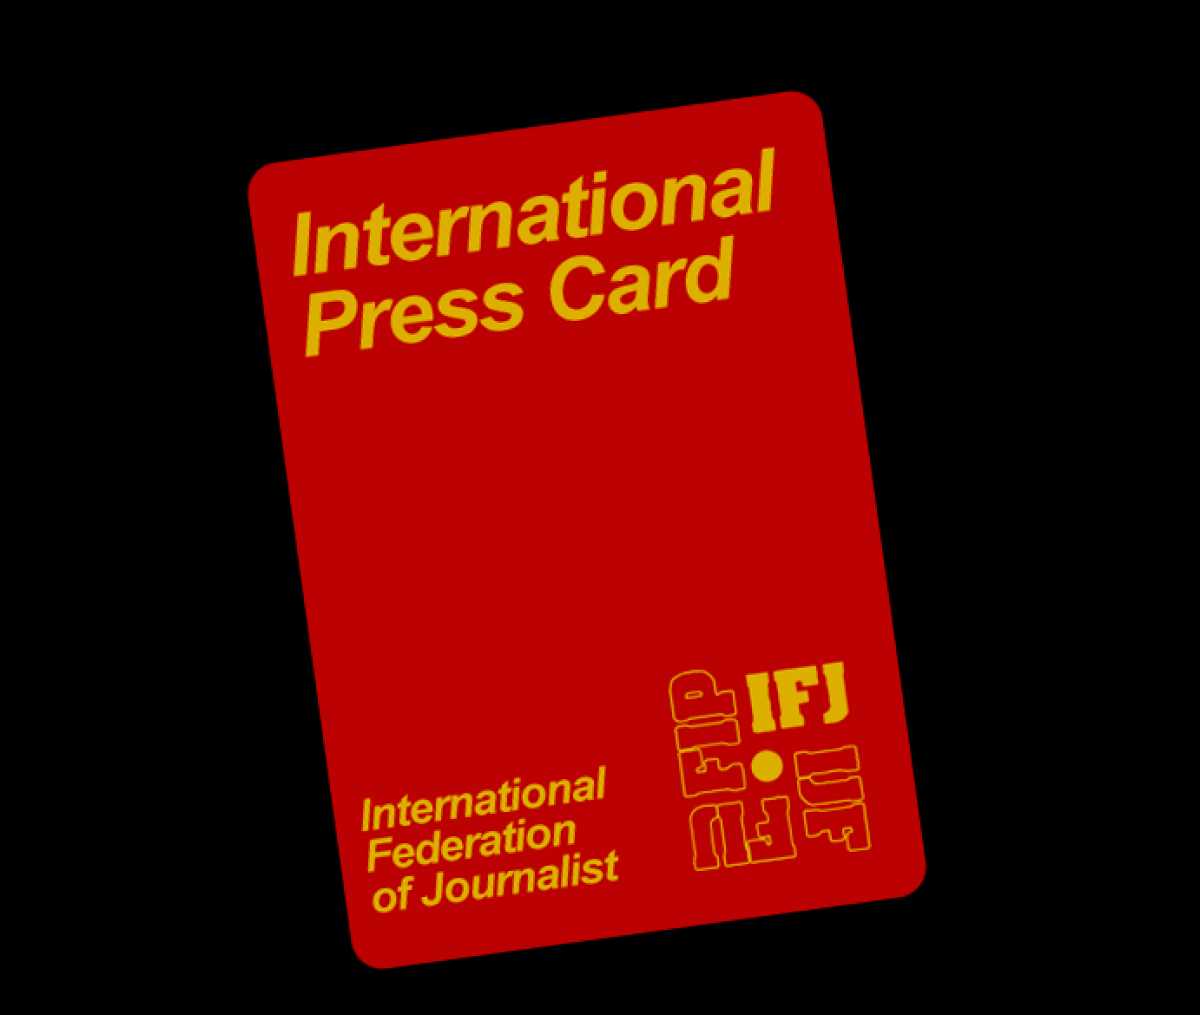 Carnet Internacional de Prensa